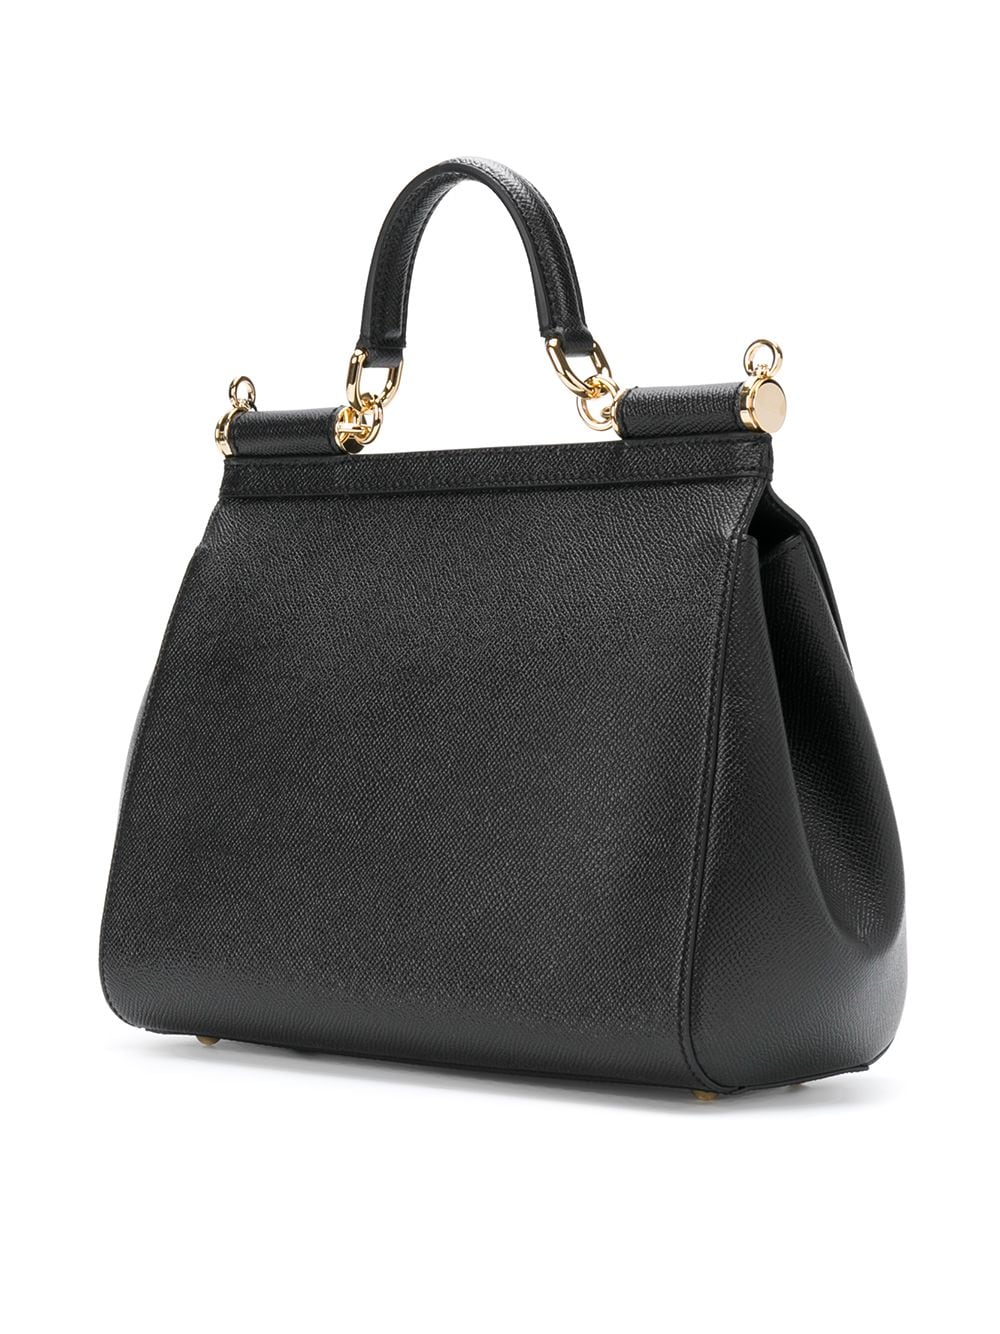 Túi xách da bê Sicily vân đen cỡ trung với chi tiết kim loại, kích thước 21x26x12cm